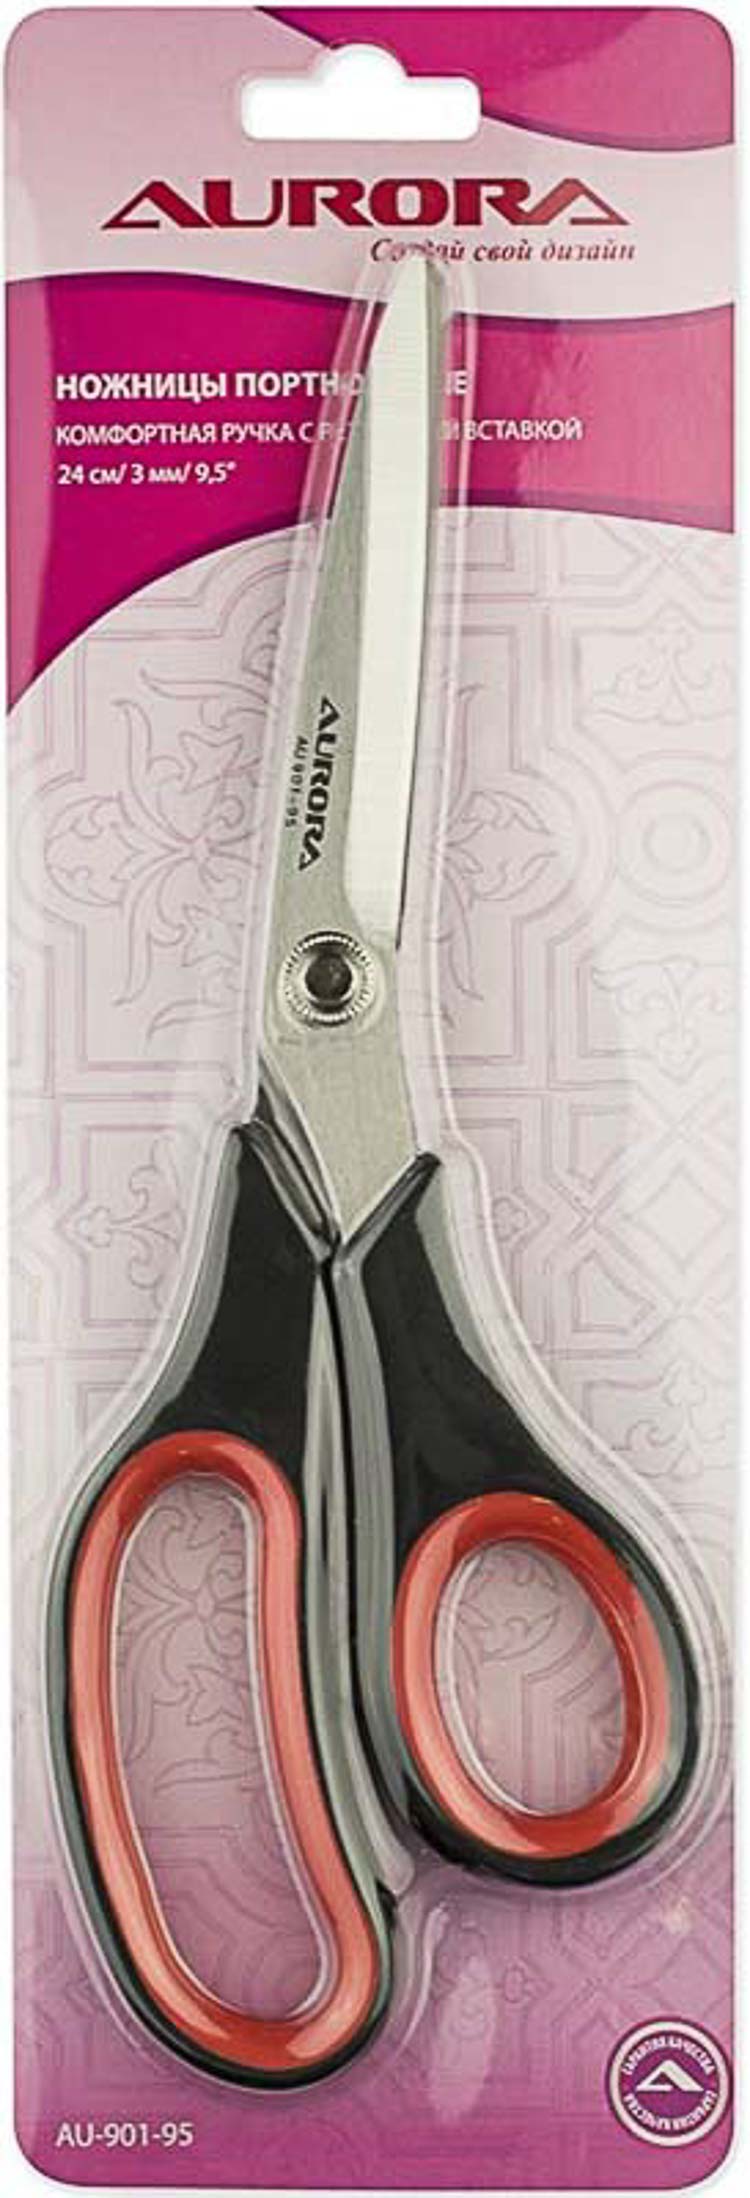 Ножницы раскройные с резиновыми вставками 25 см, Aurora AU 901-95